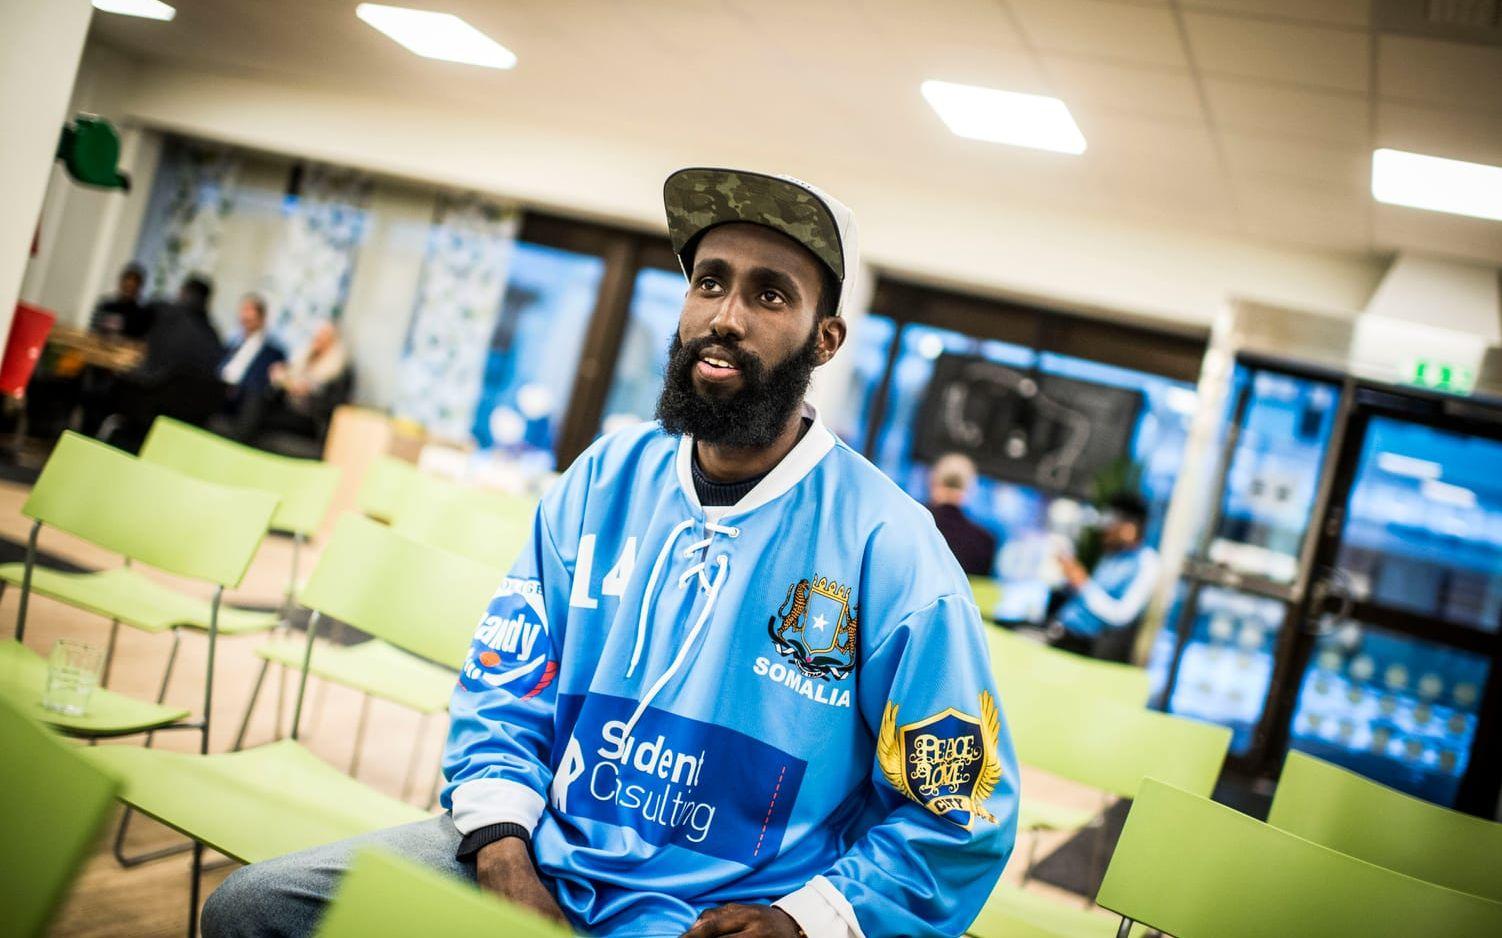 Sport kan vara en metod för knyta kontakter, tycker Ahmed Hussein, före detta bandyspelare i Somalia bandy.